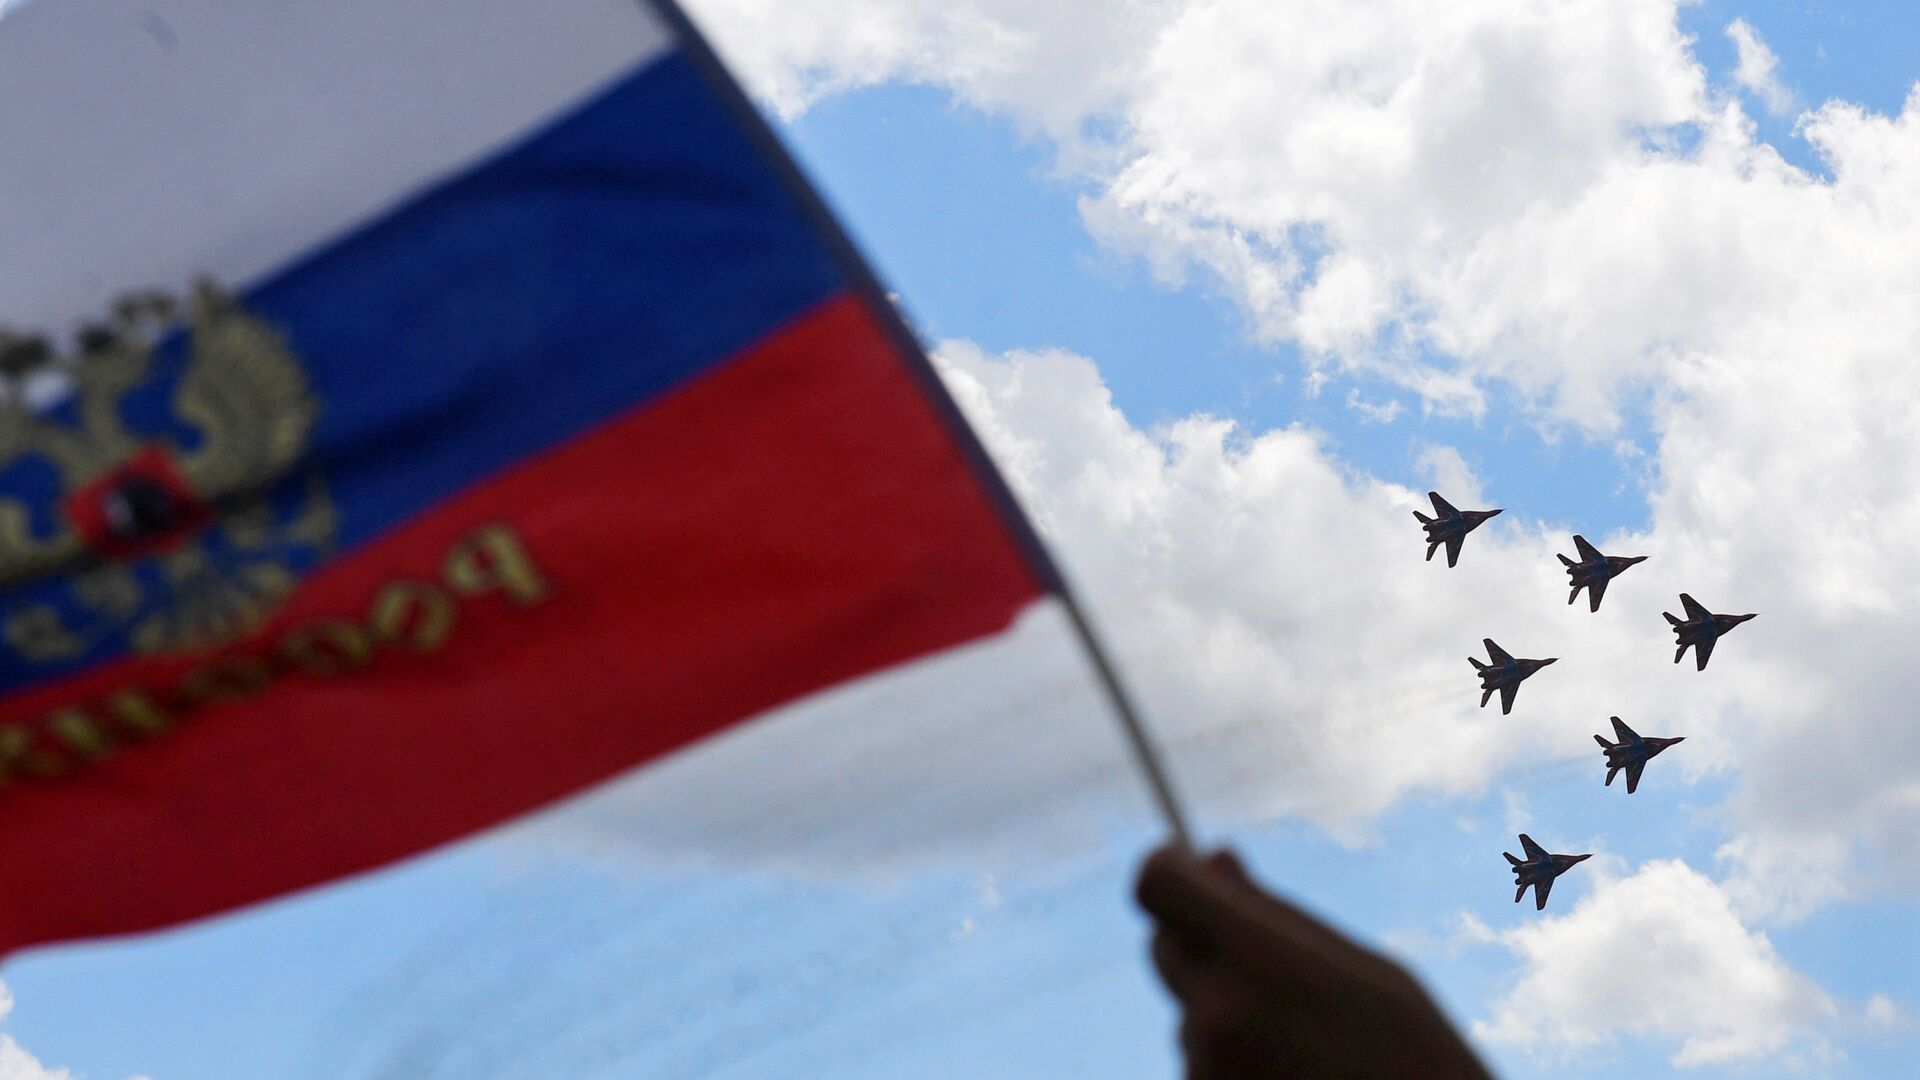 Многоцелевые истребители МиГ-29 пилотажной группы Стрижи выполняют демонстрационный полет на МАКС-2017 в Жуковском. 23 июля 2017 - РИА Новости, 1920, 02.03.2022